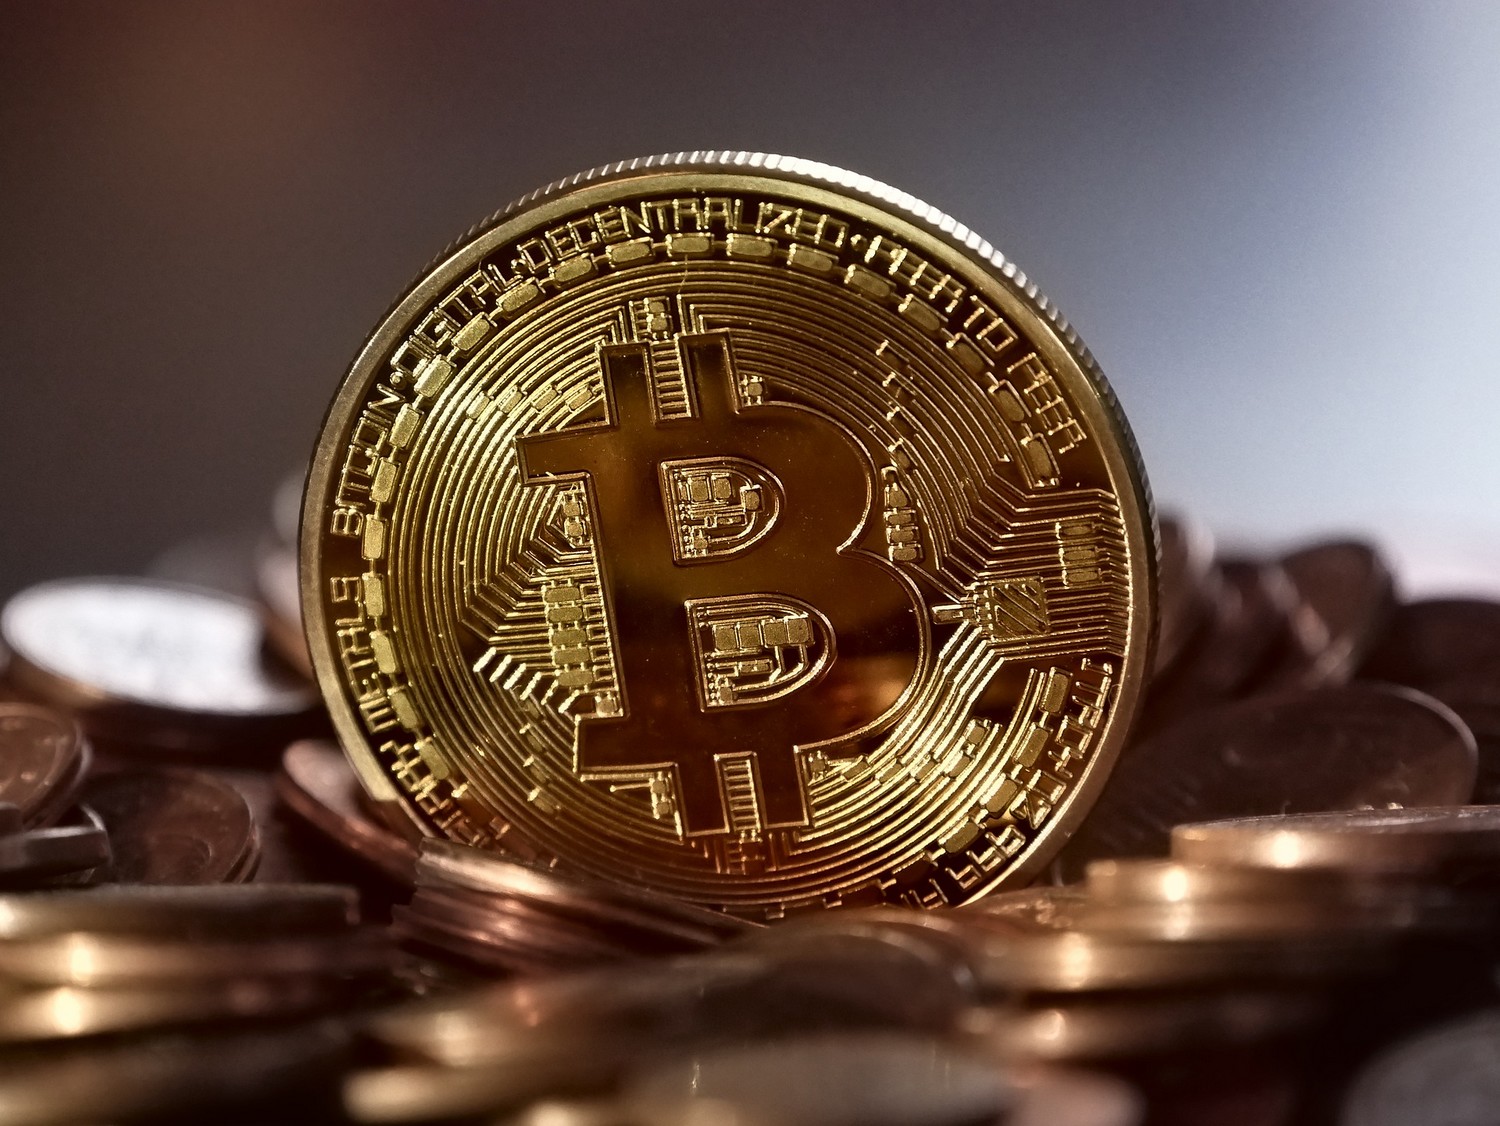 indirekt in bitcoin investieren